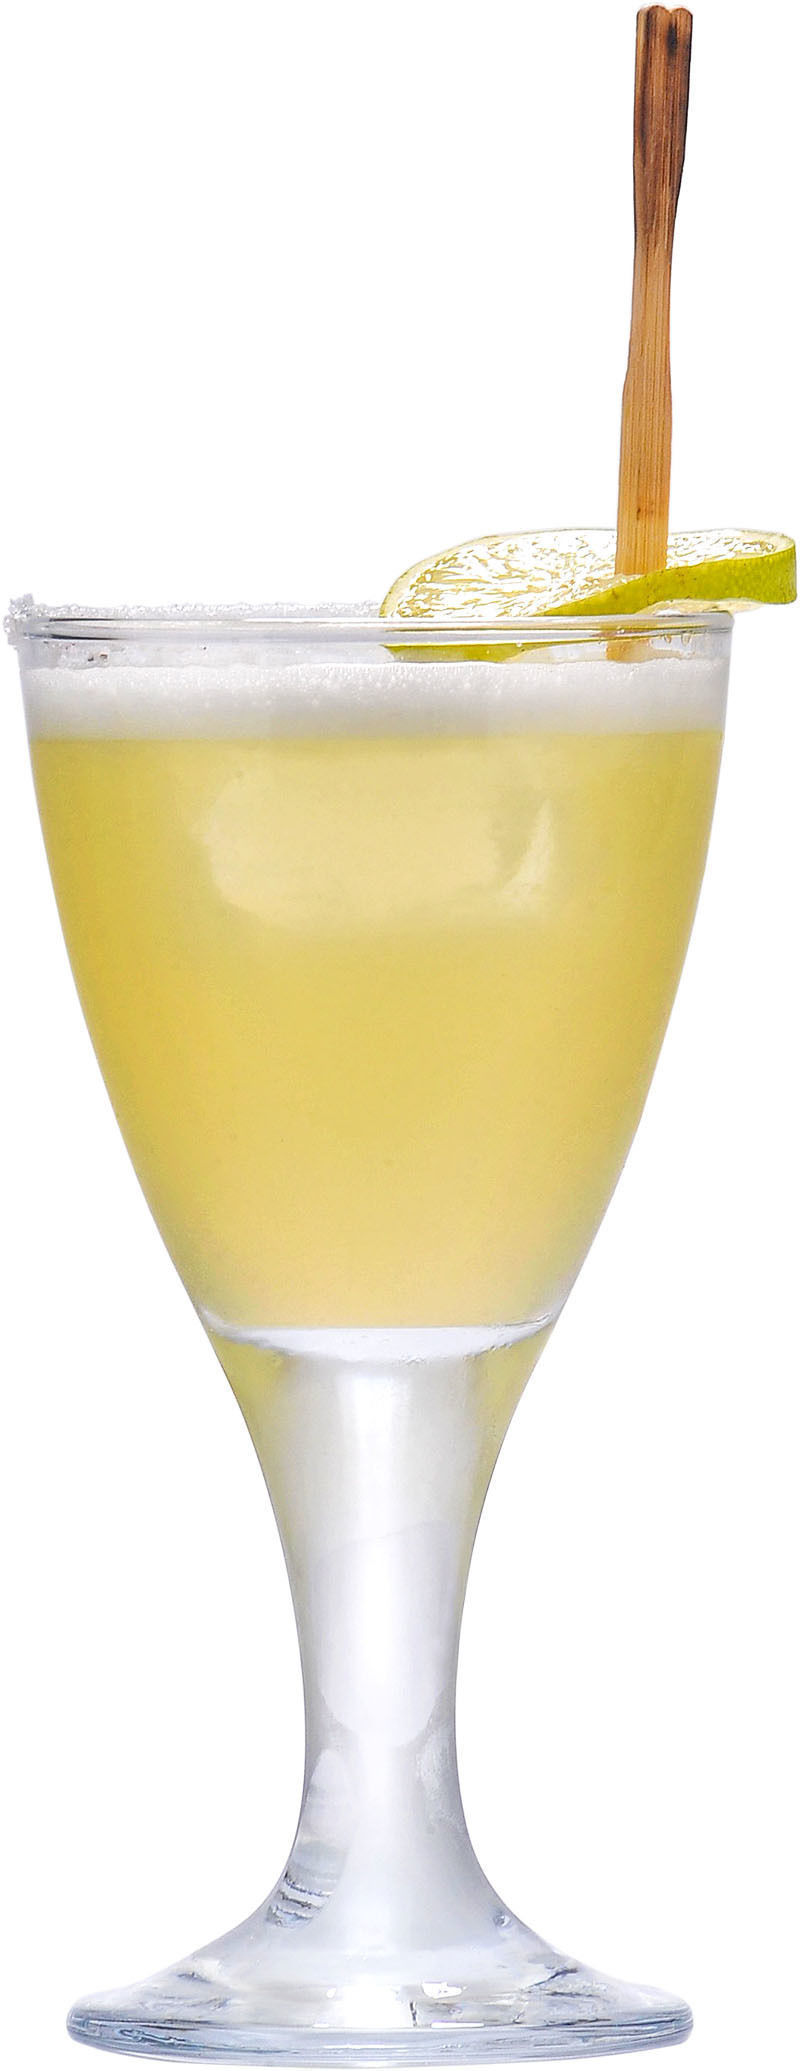 Comment préparer le cocktail Margarita dorée